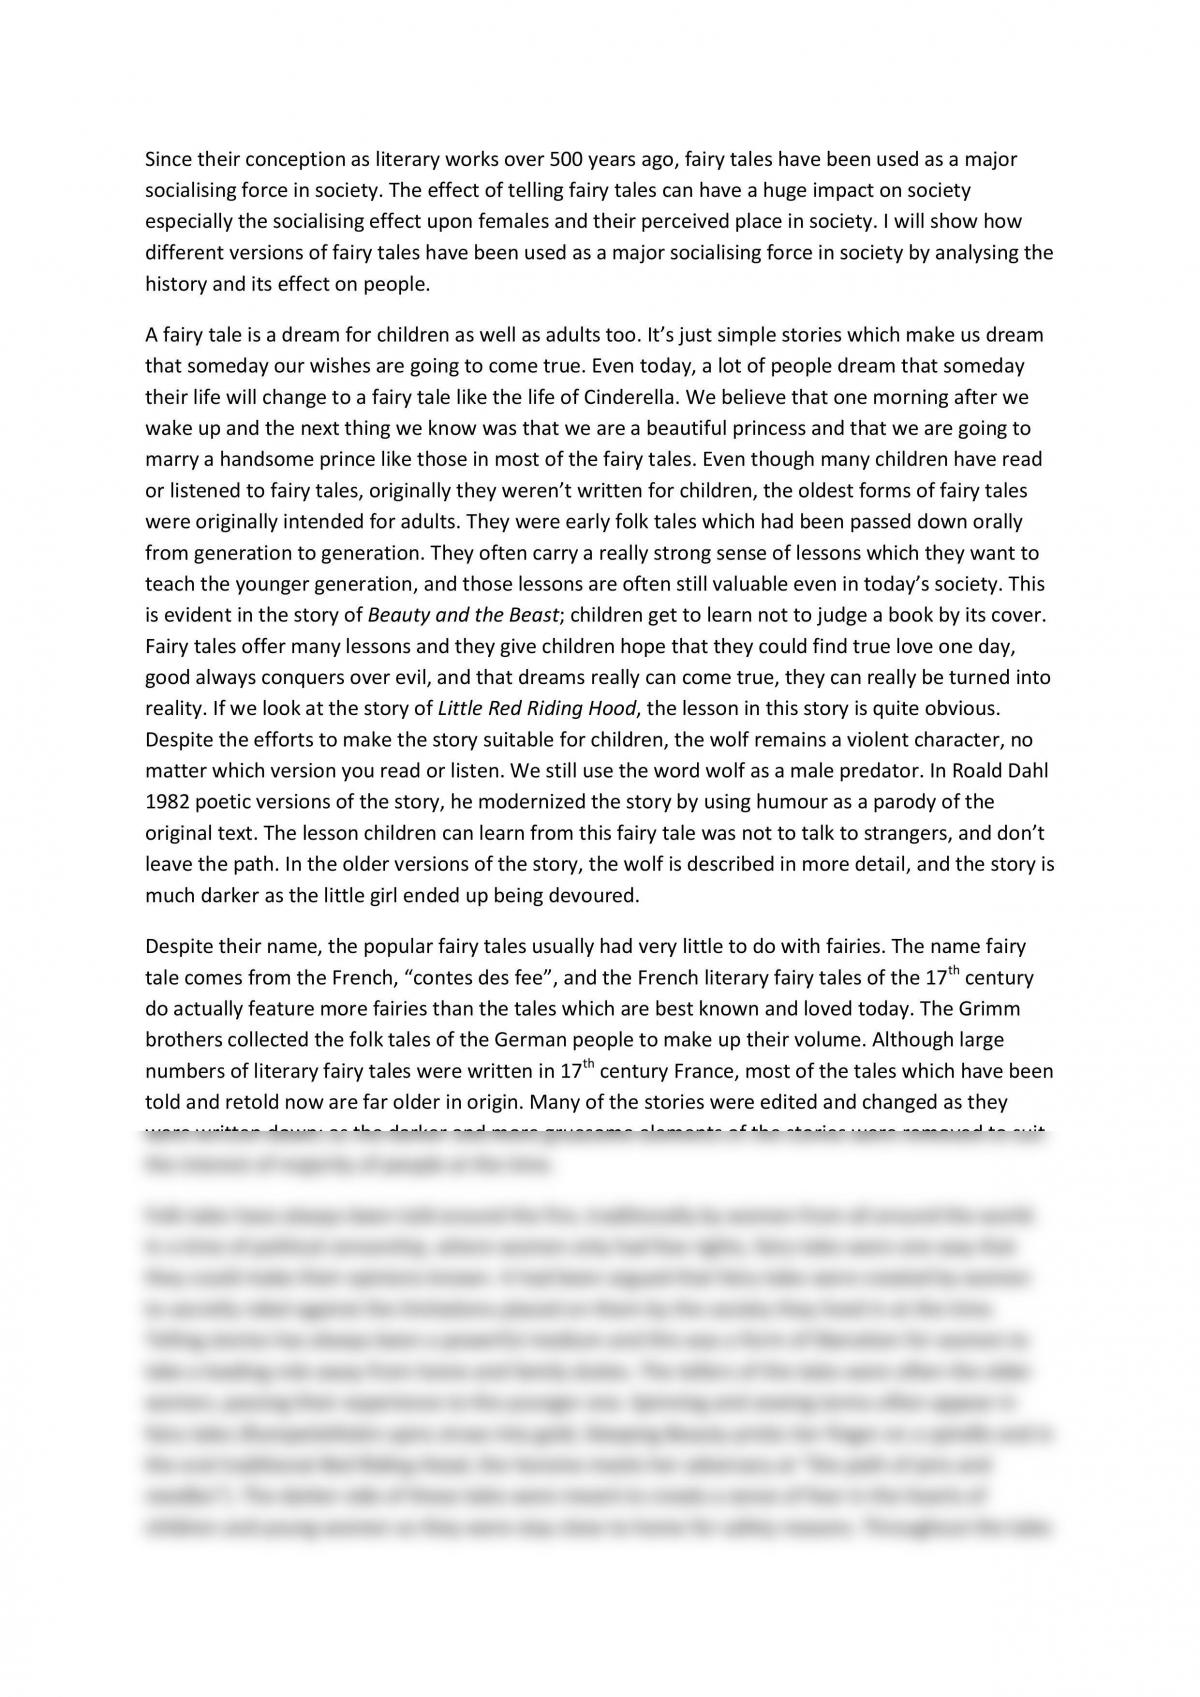 rumpelstiltskin essay